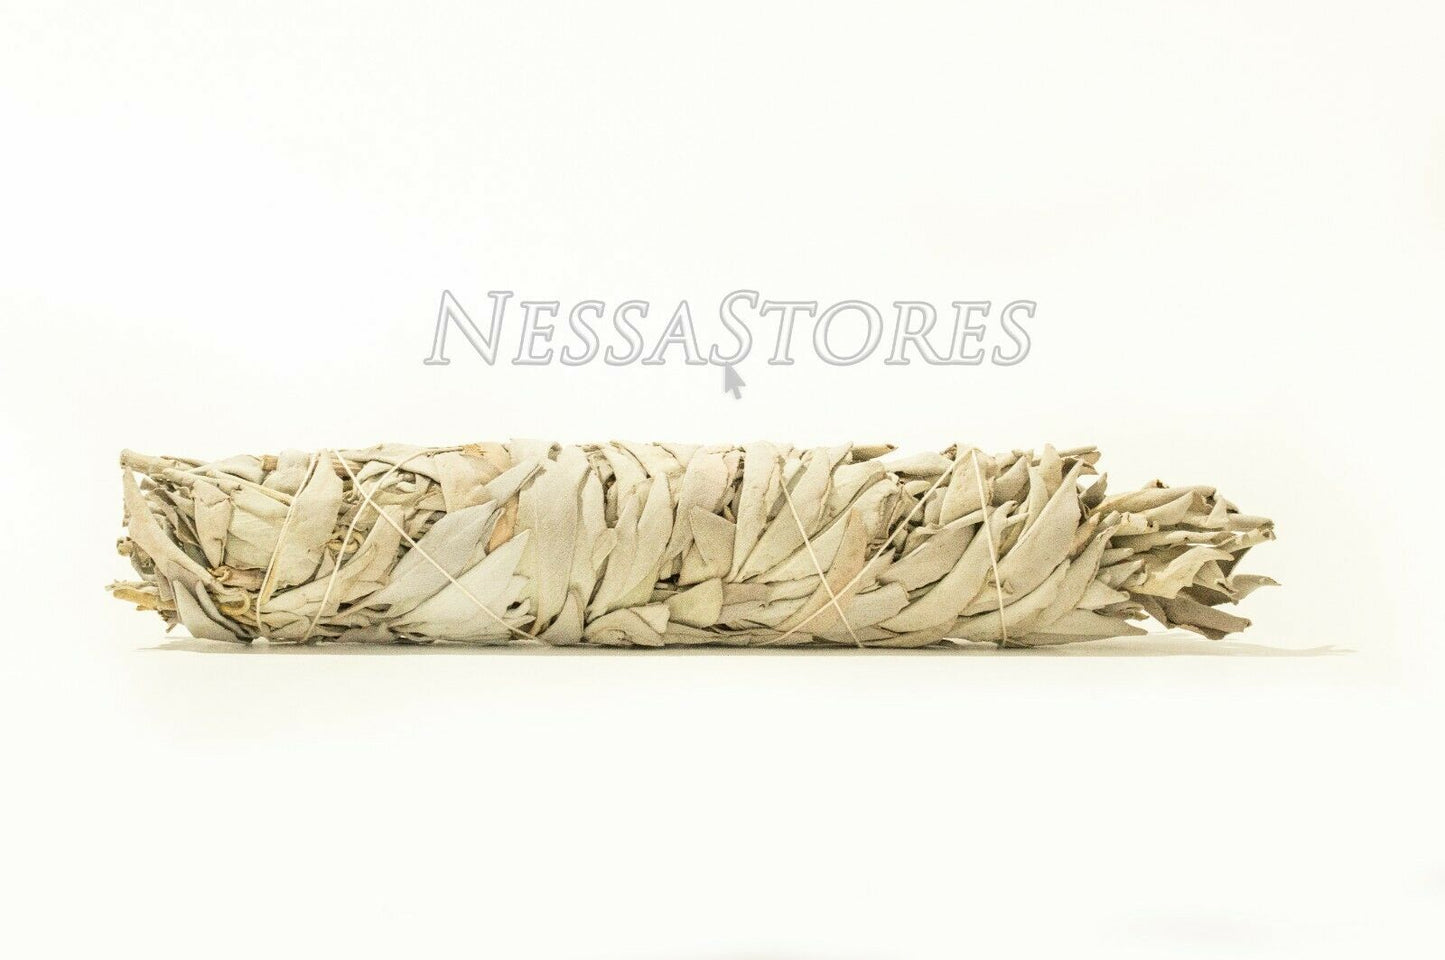 NessaStores California White Sage Smudge Incense 8"-9" Bundle (4 pcs) #JC-010